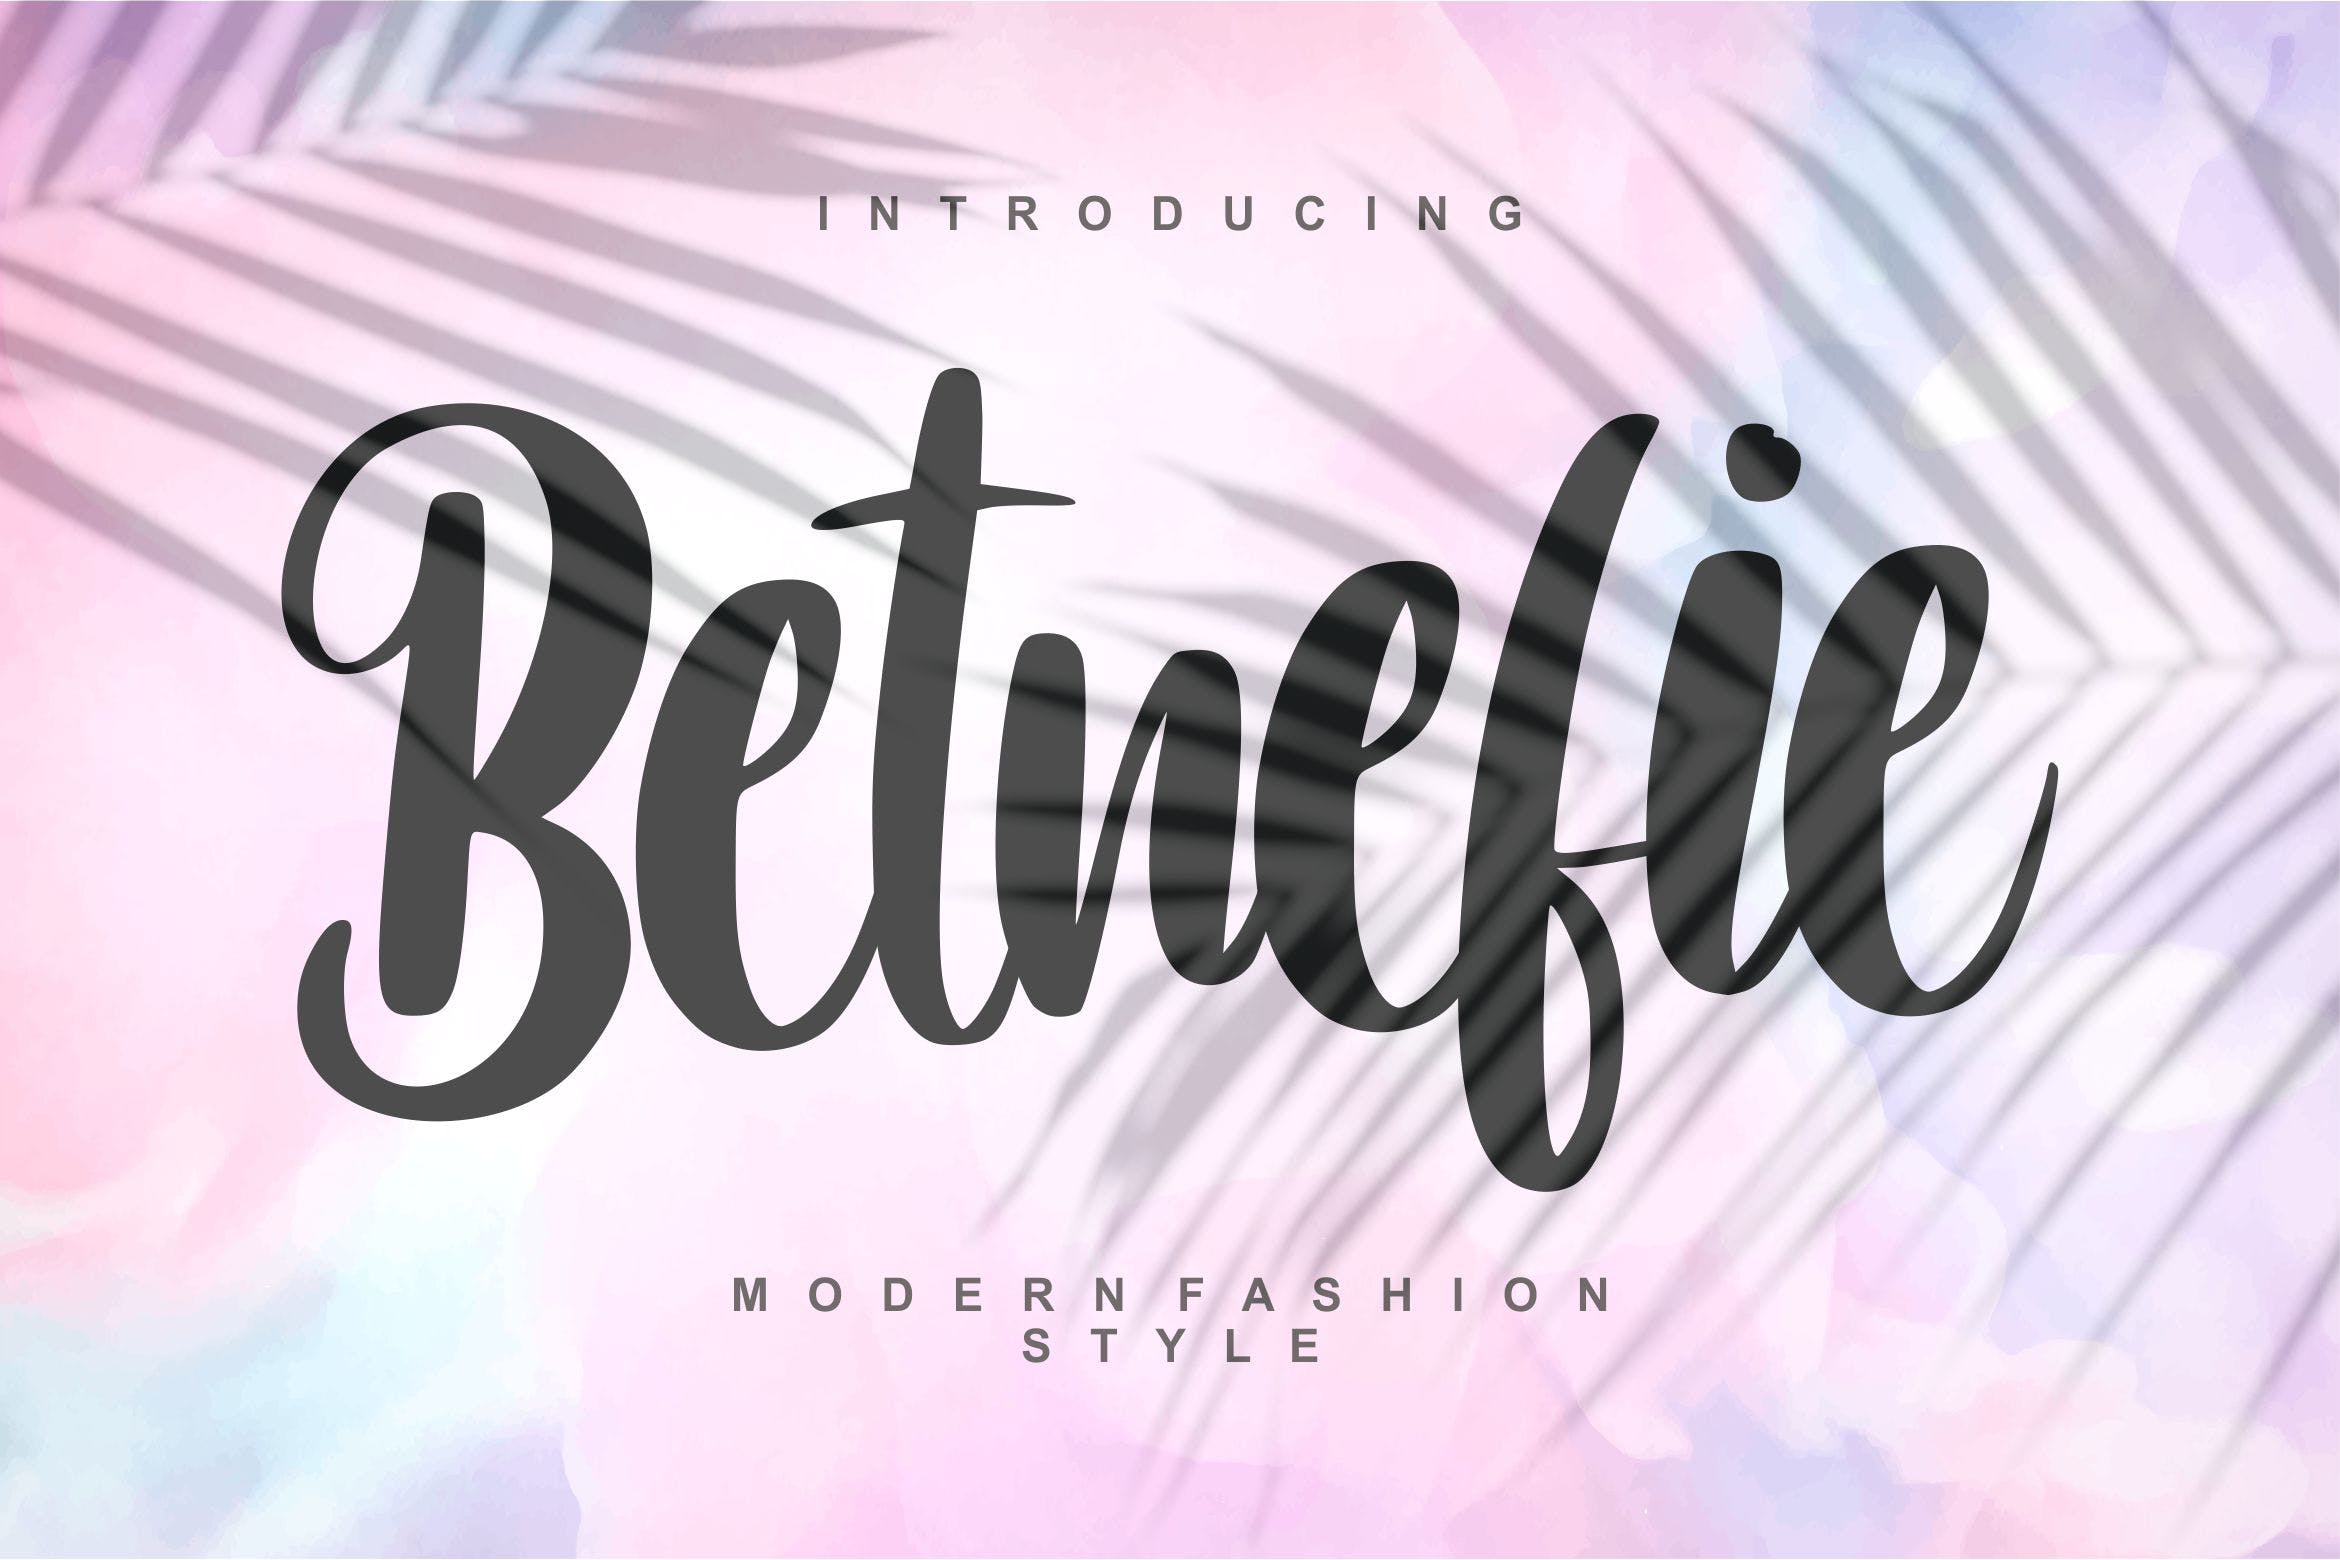 现代时尚风格英文书法字体蚂蚁素材精选 Betnefie | Modern Fashion Style Font插图